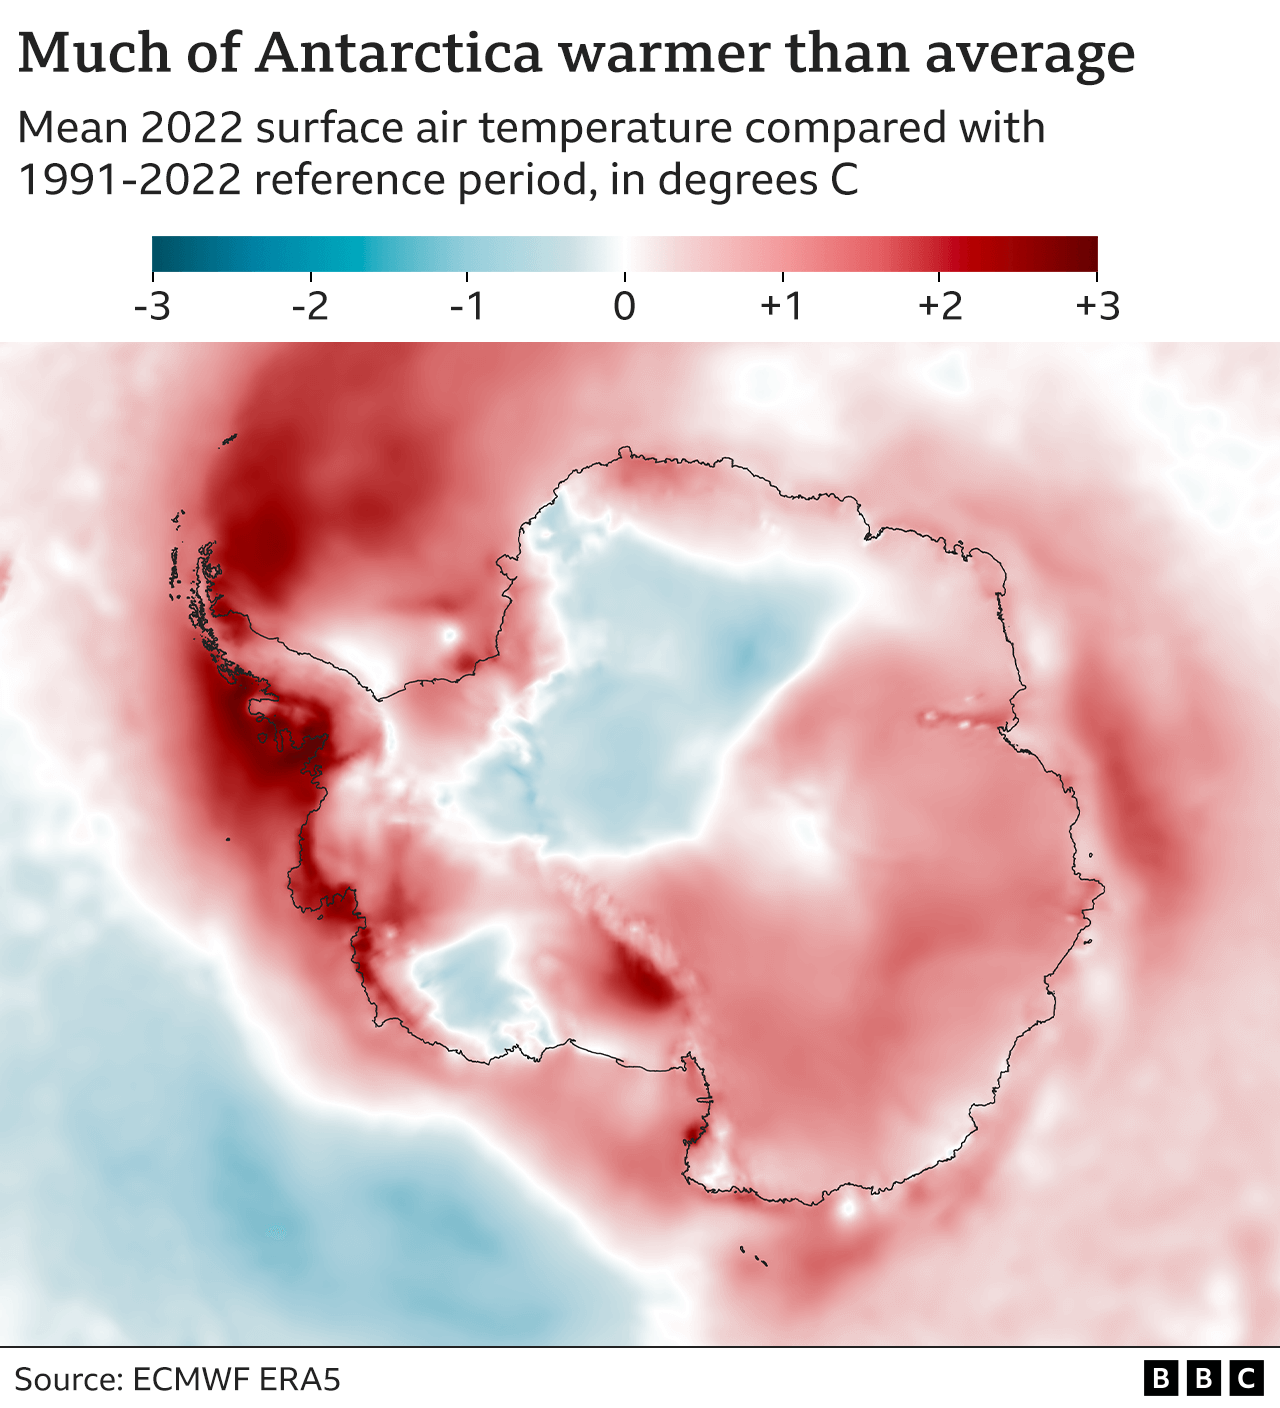 2022'deki ortalama yüzey hava sıcaklığı ile 1991-2020 referans dönemindeki ortalama sıcaklık arasındaki farkı temsil etmek için renk gölgelendirmeli Antarktika Haritası.  İki soğuk mavi parça dışında, kıta çoğunlukla kırmızı - ortalamanın yaklaşık 1 derece üzerinde.  Yarımadanın üzerindeki alanlar, ortalamanın 3 dereceye kadar üzerinde koyu kırmızıdır.